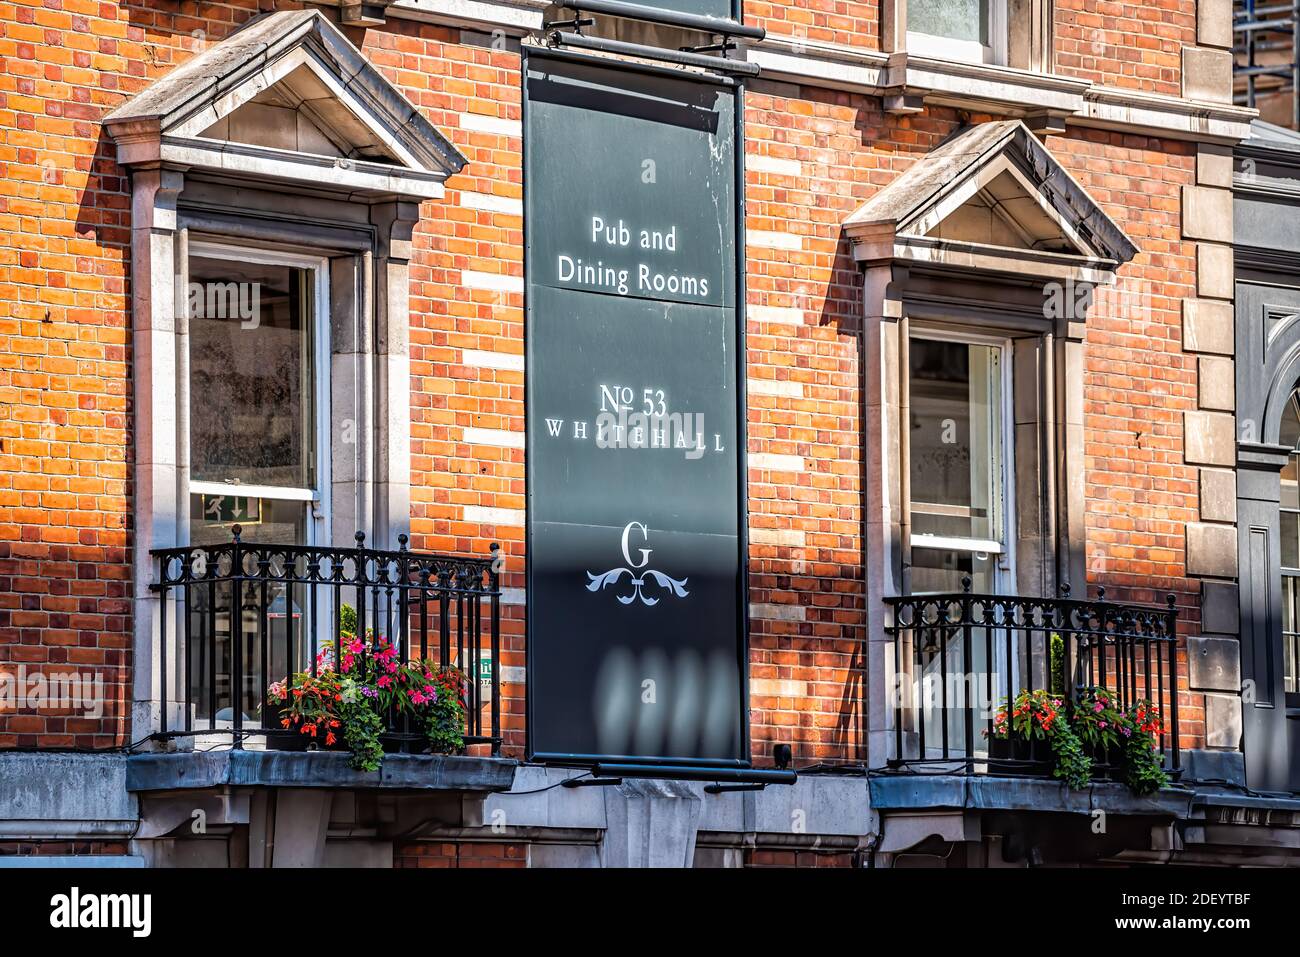 Londres, Reino Unido - 22 de junio de 2018: Centro de la ciudad por Trafalgar Square con pub y comedor firmar banner en el edificio de ladrillo en el no 53 Whitehall Foto de stock